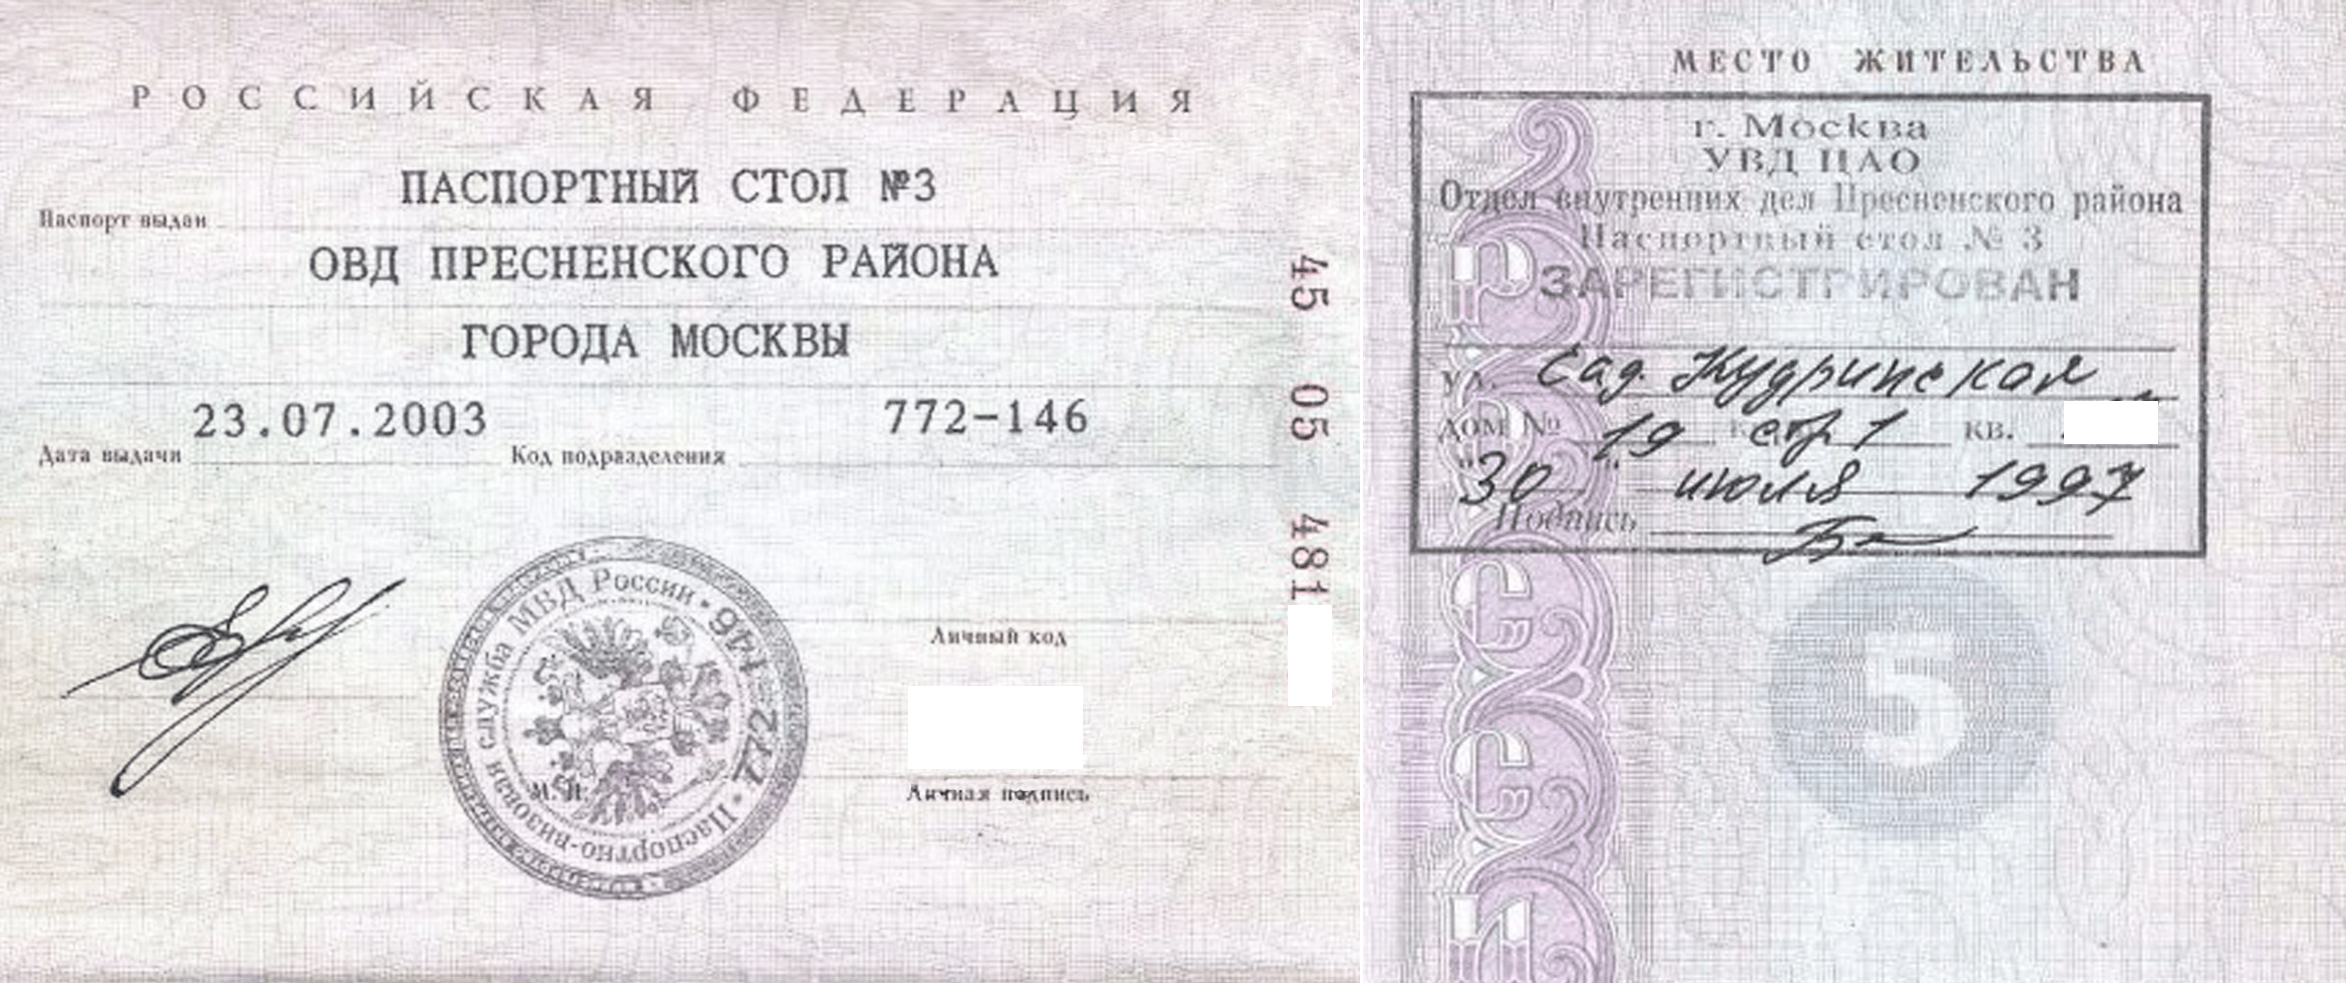 Паспортные данные Москва с пропиской. Корпус место жительства